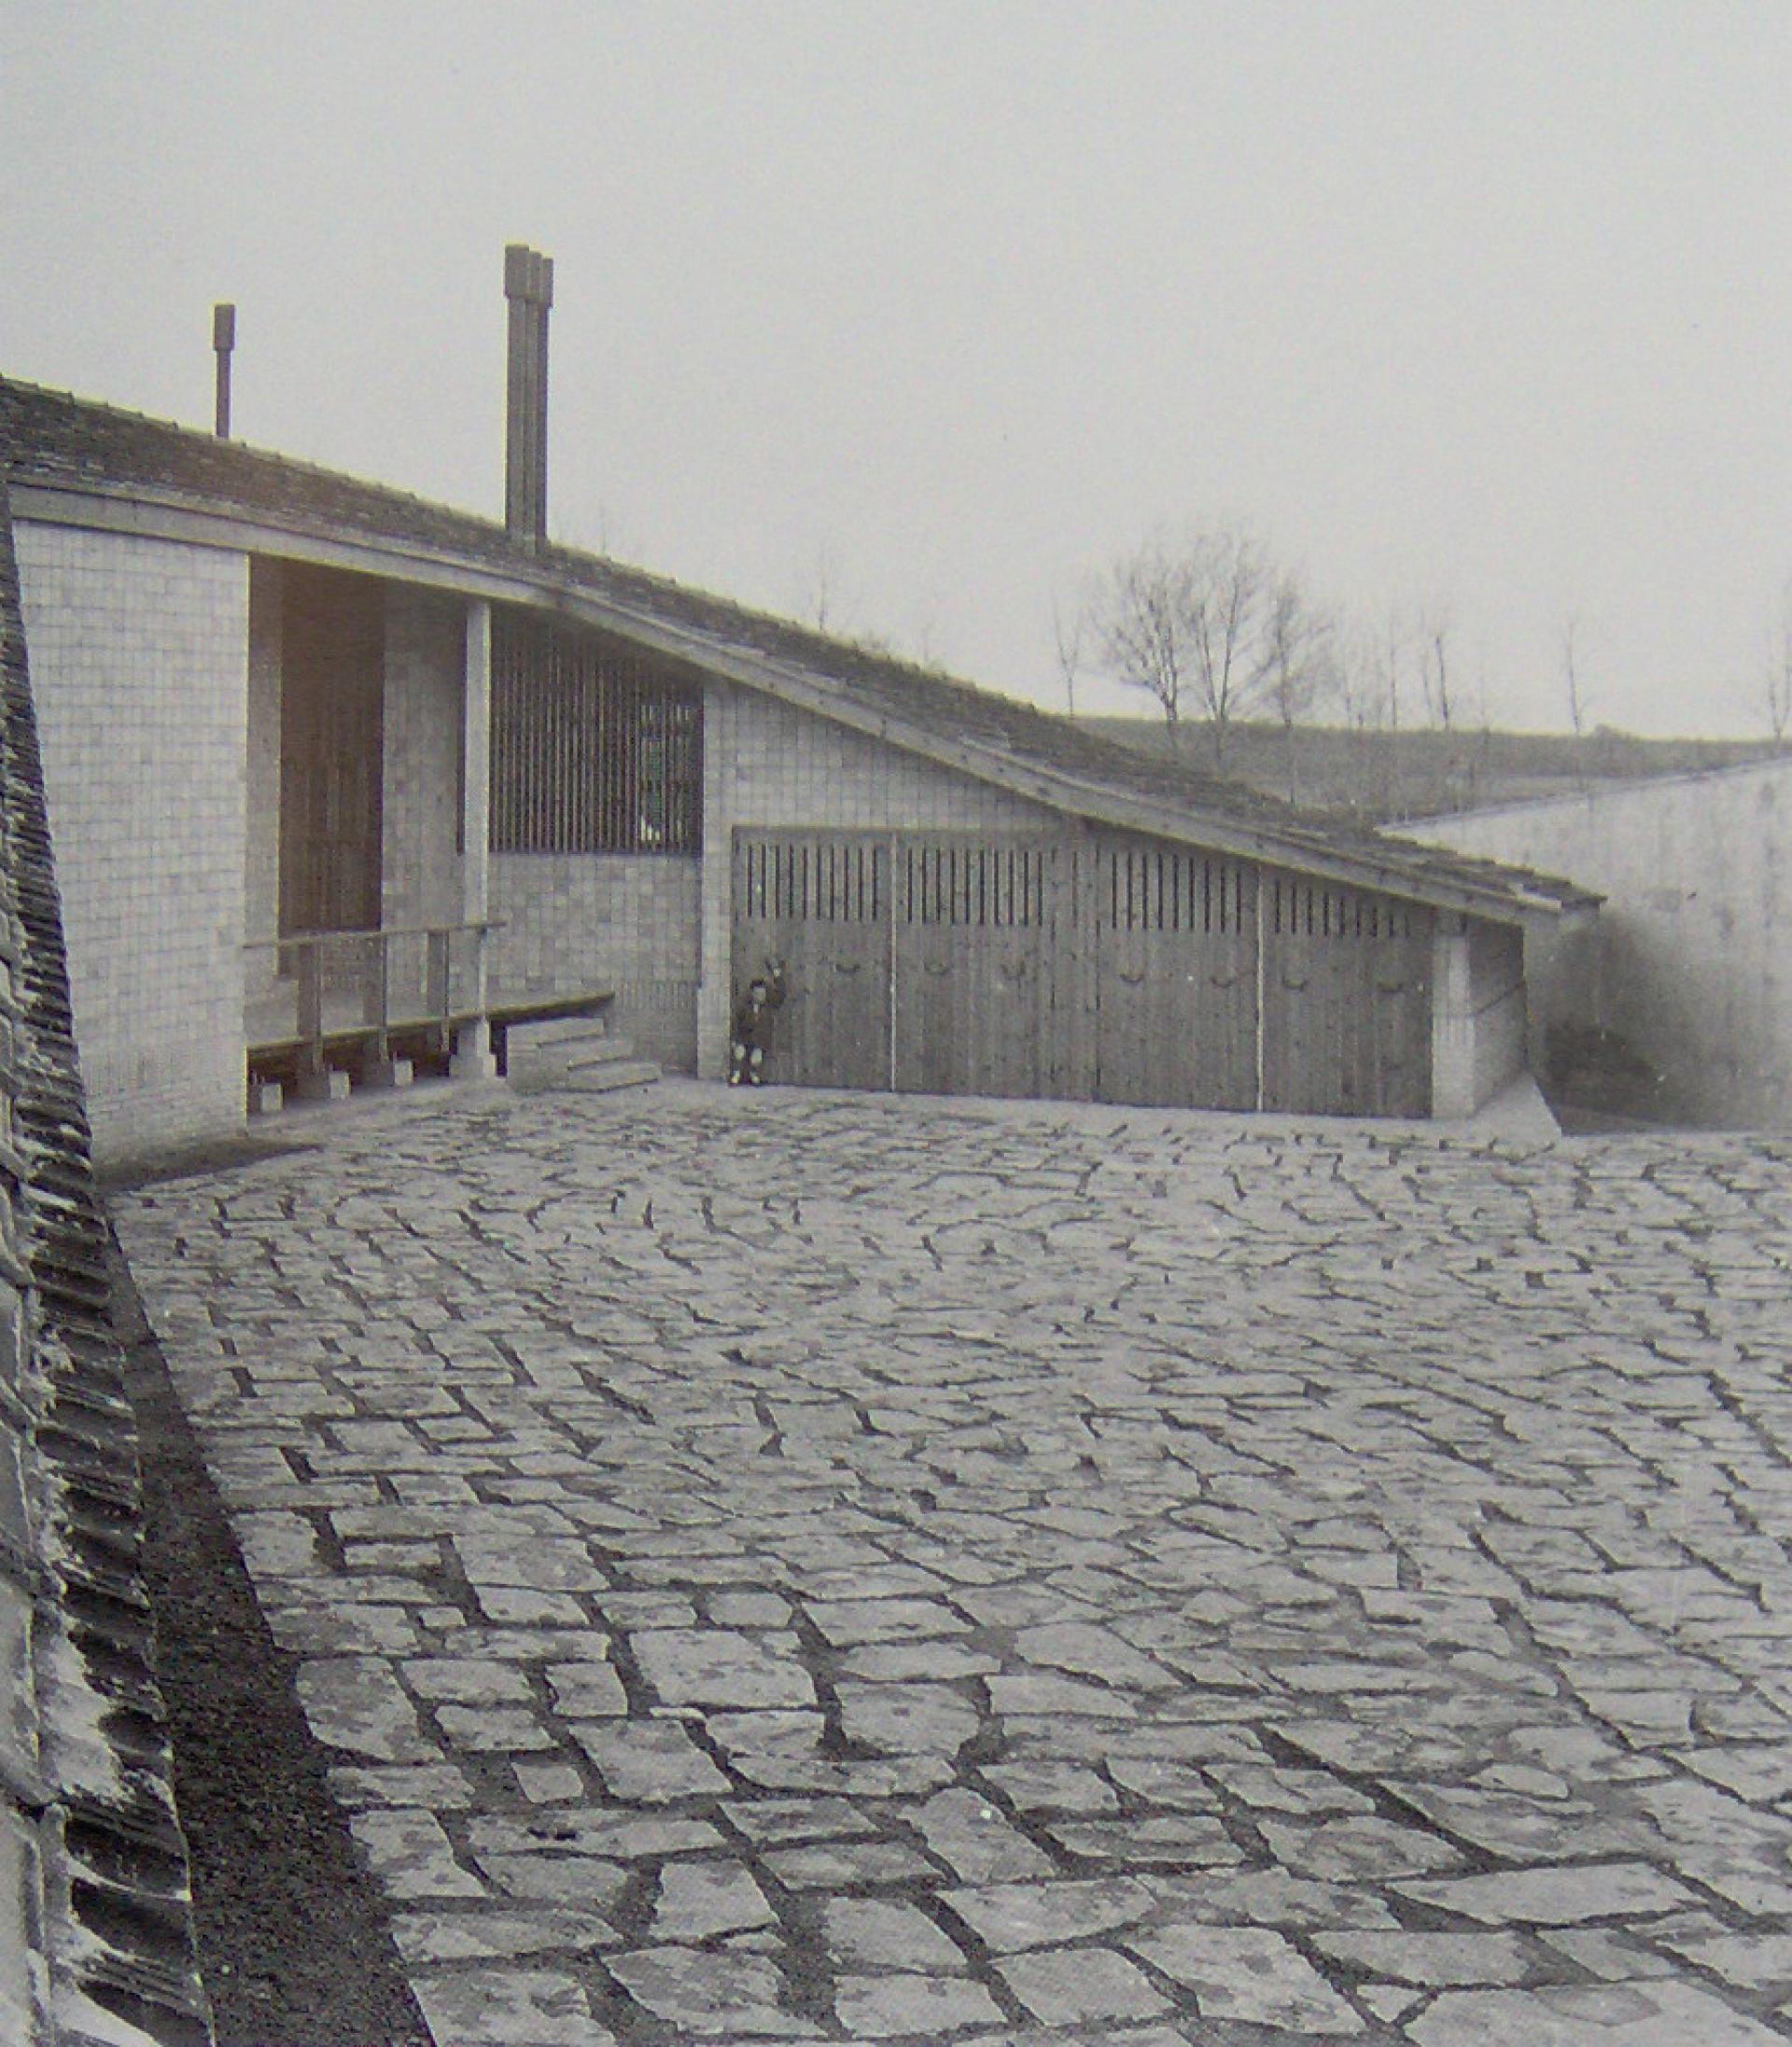 Landscape | Fernando Gómez House in Álava (1959) by Francisco Javier Sáenz de Oiza.